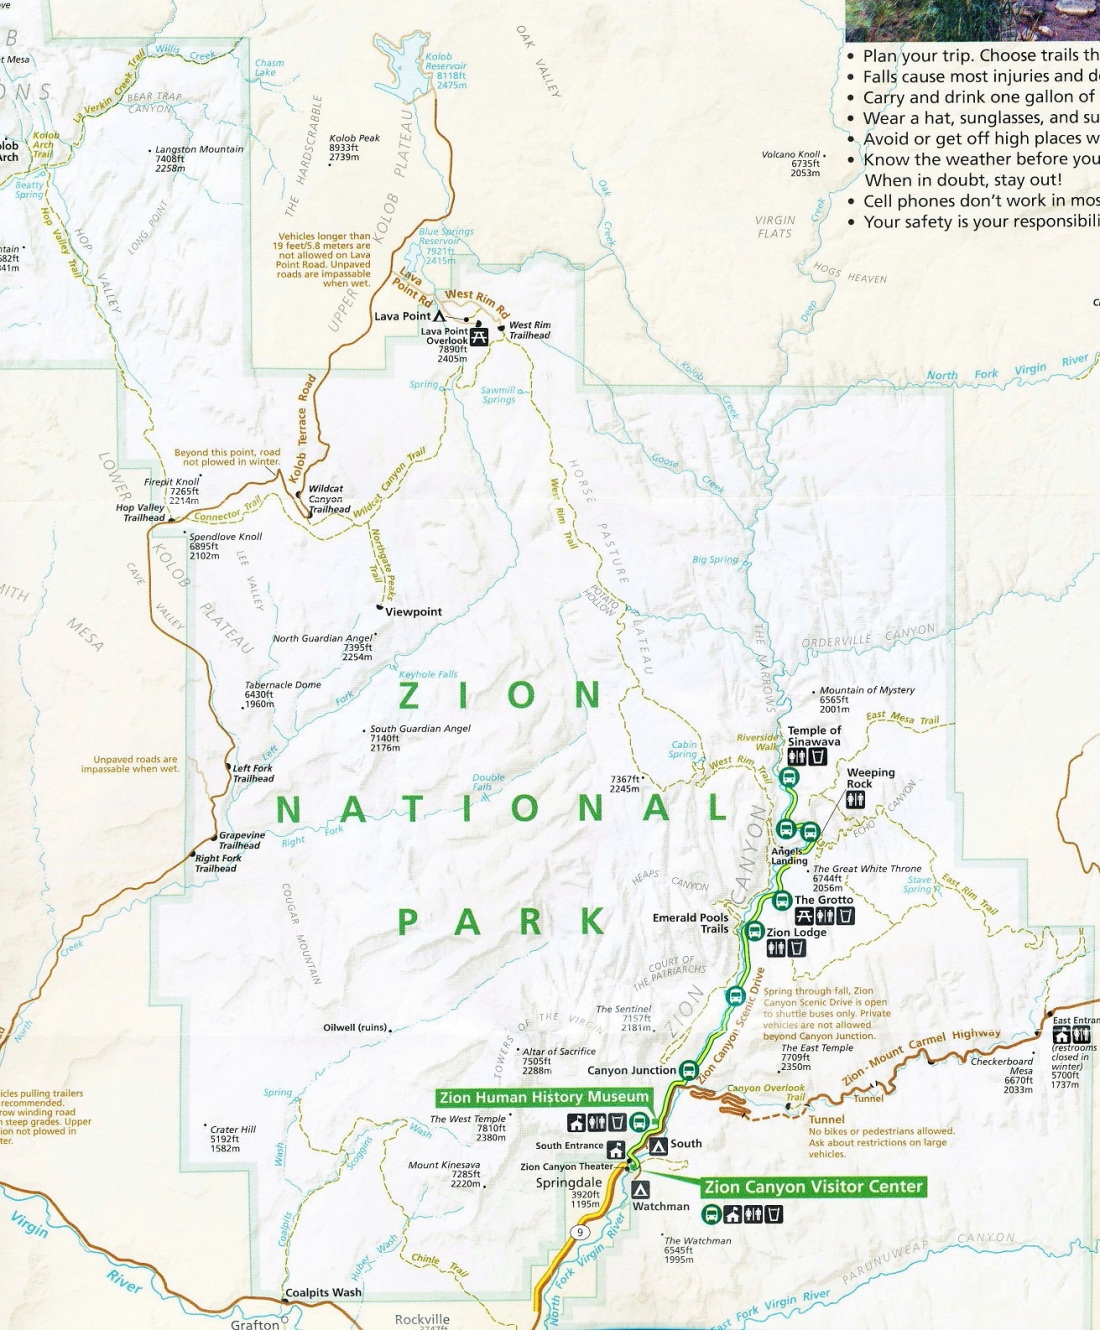 zion national park - Copy